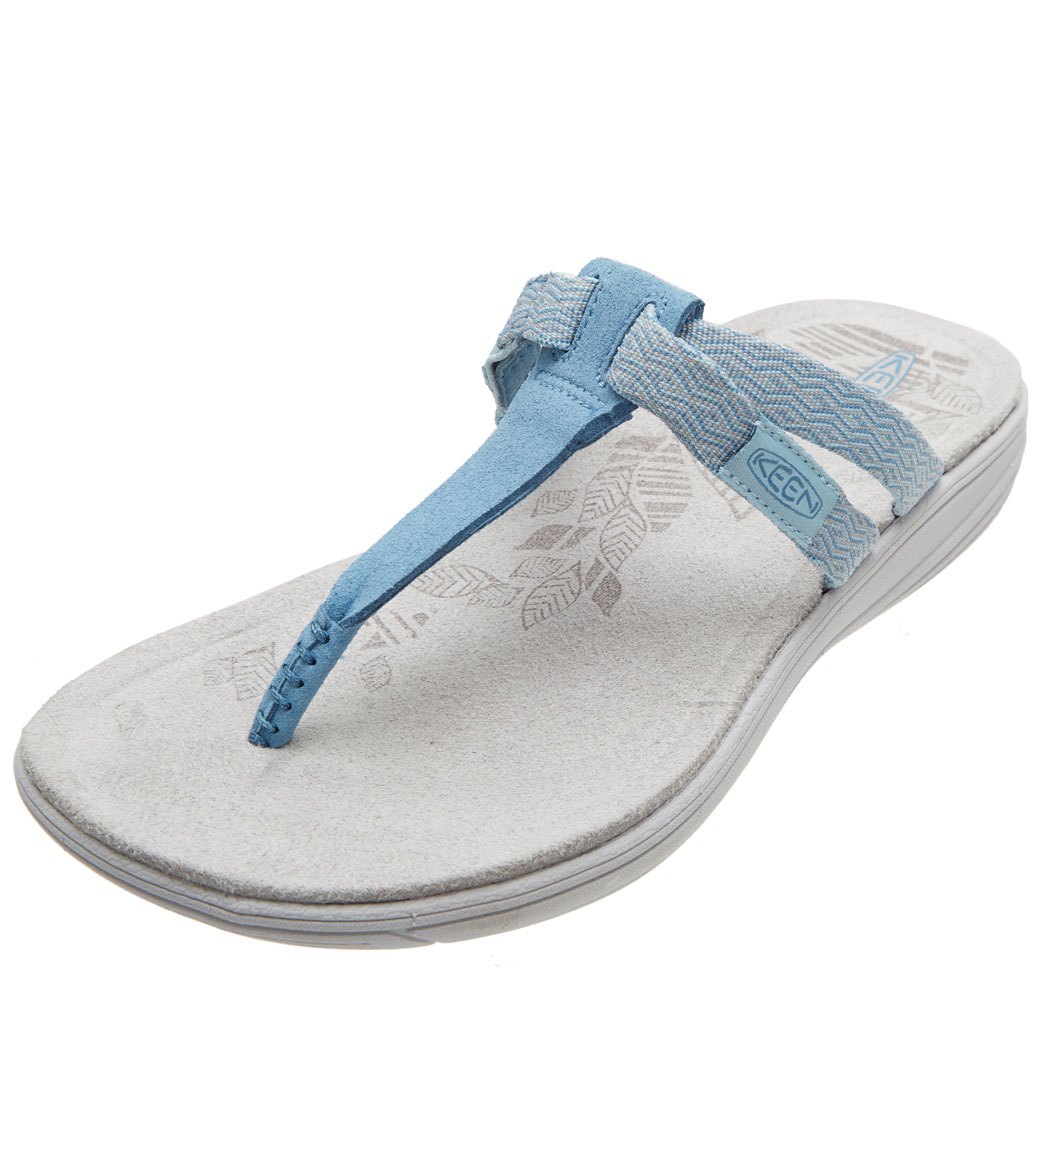 Keen Women's Damaya Flip Flop Sandals - Sterling Blue/Dress Blue 6 - Swimoutlet.com